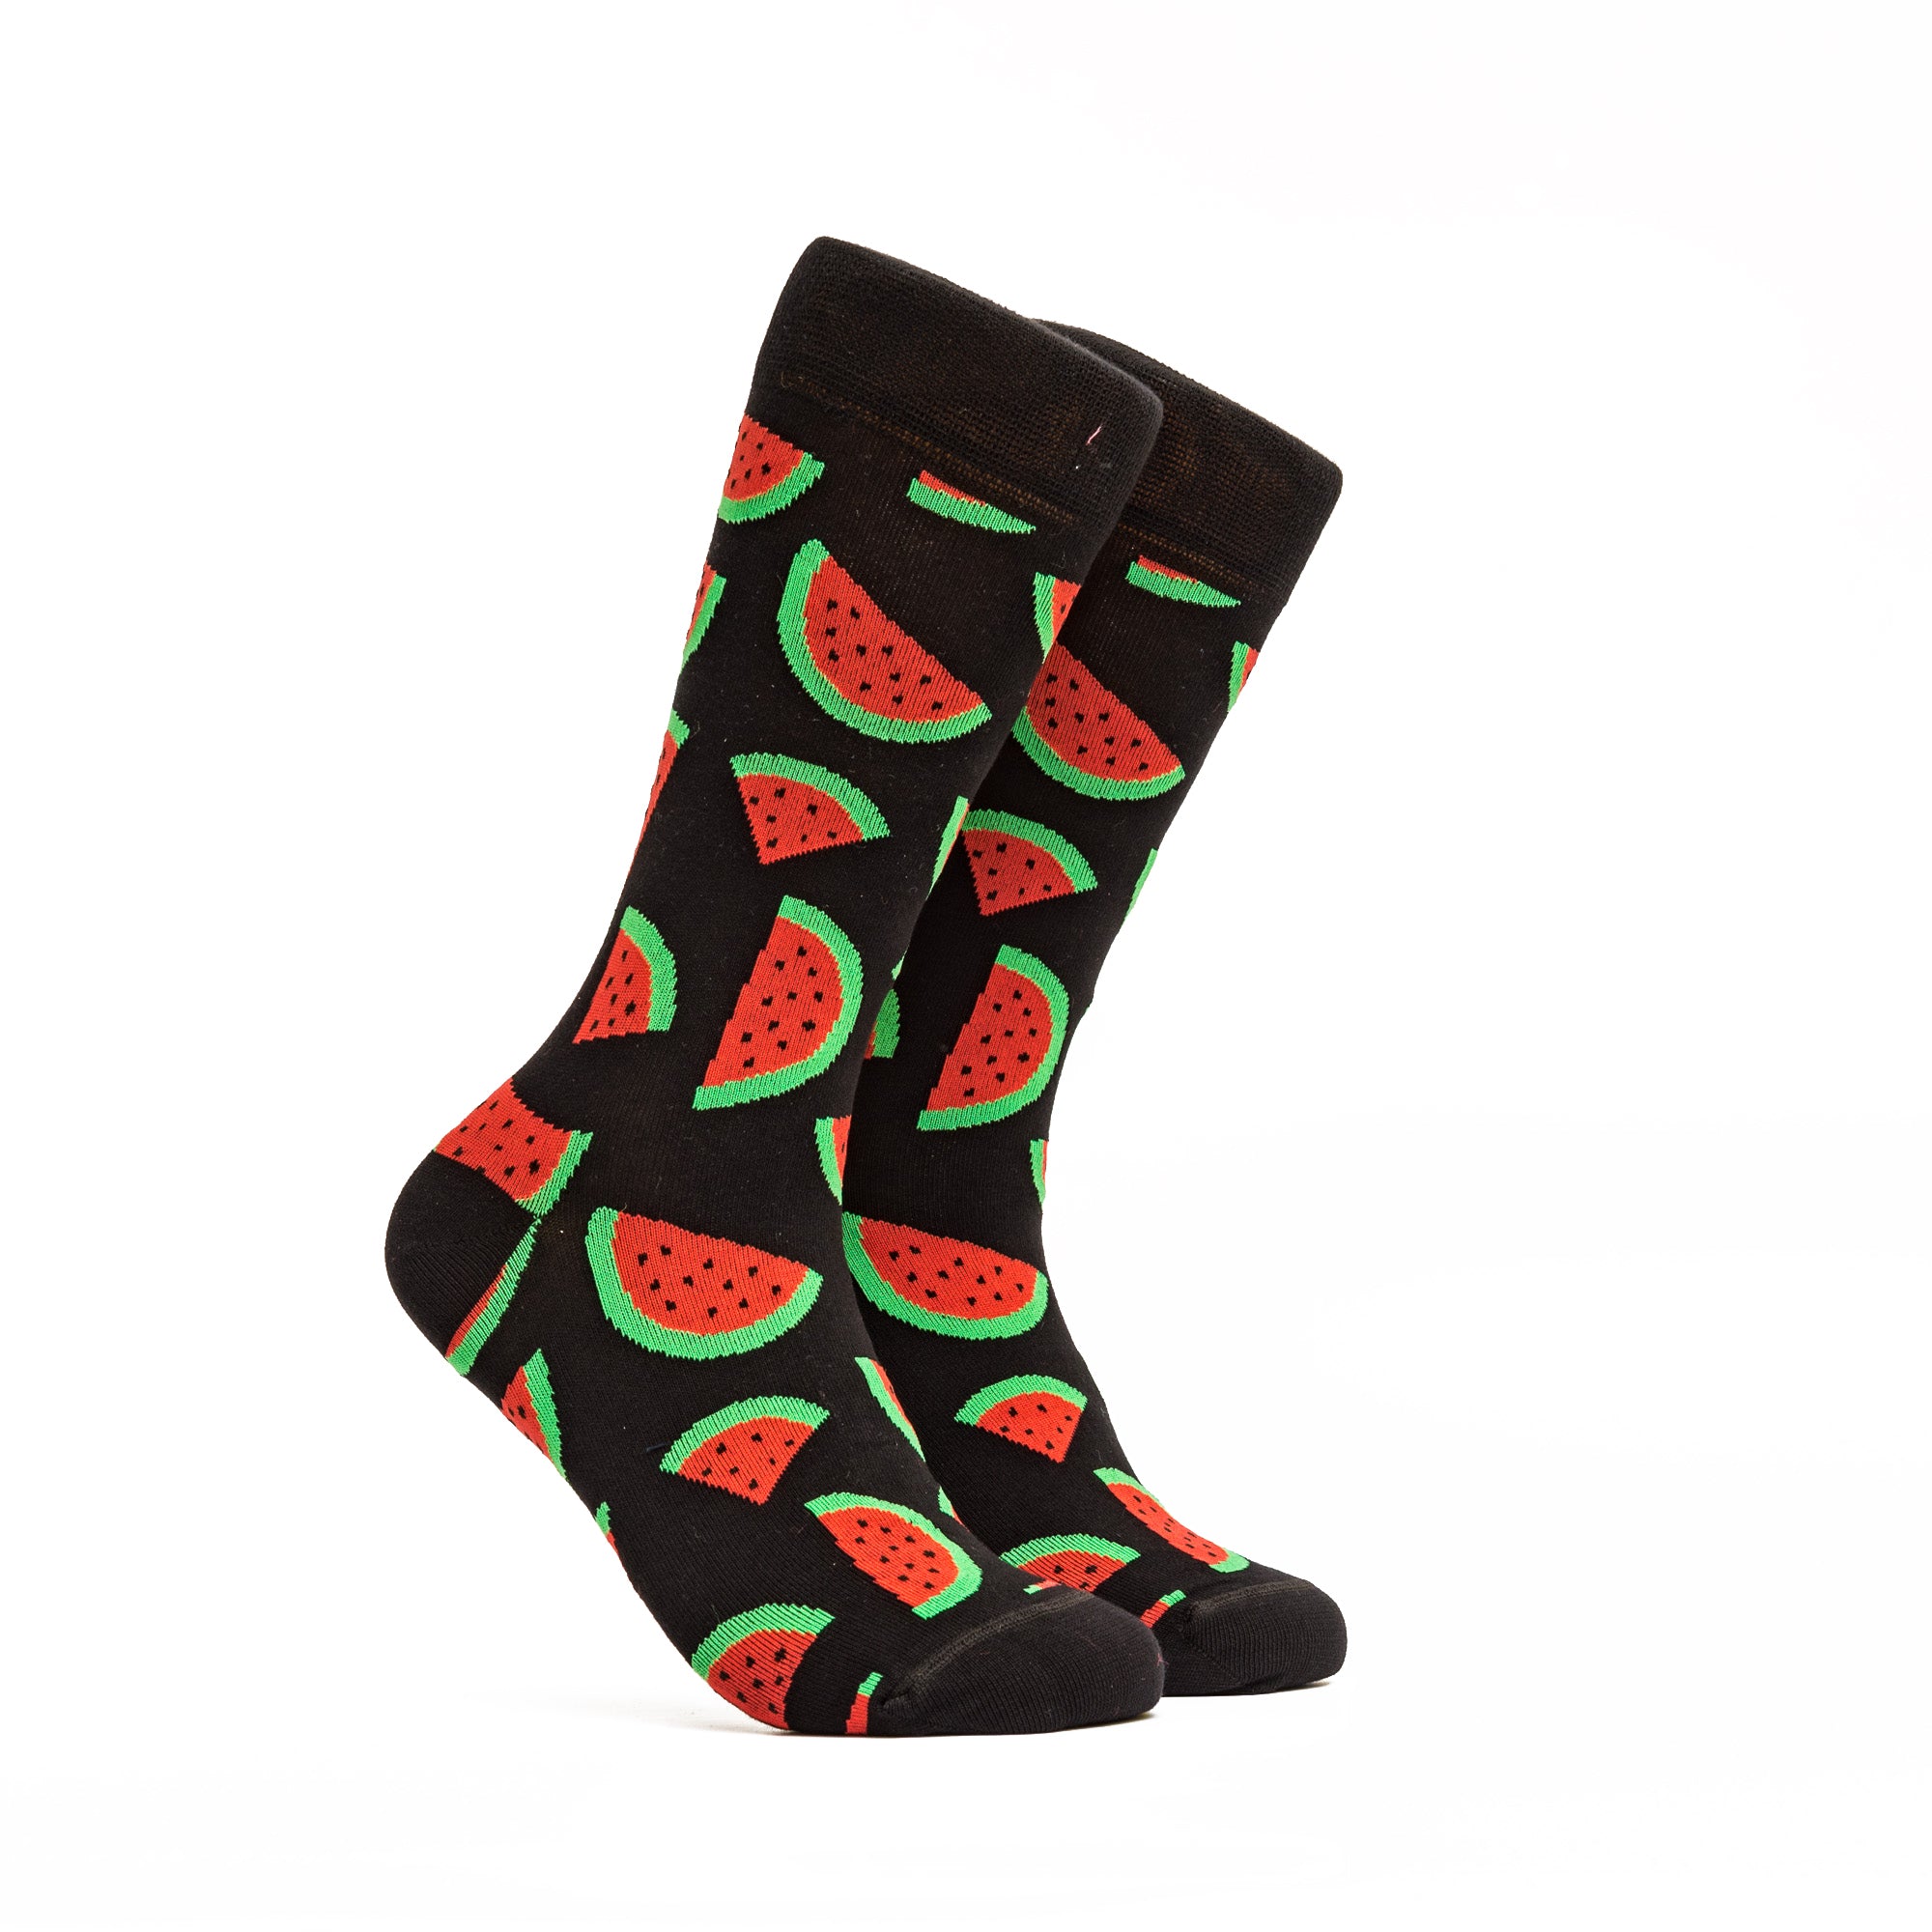 Watermelon Socks For Men 